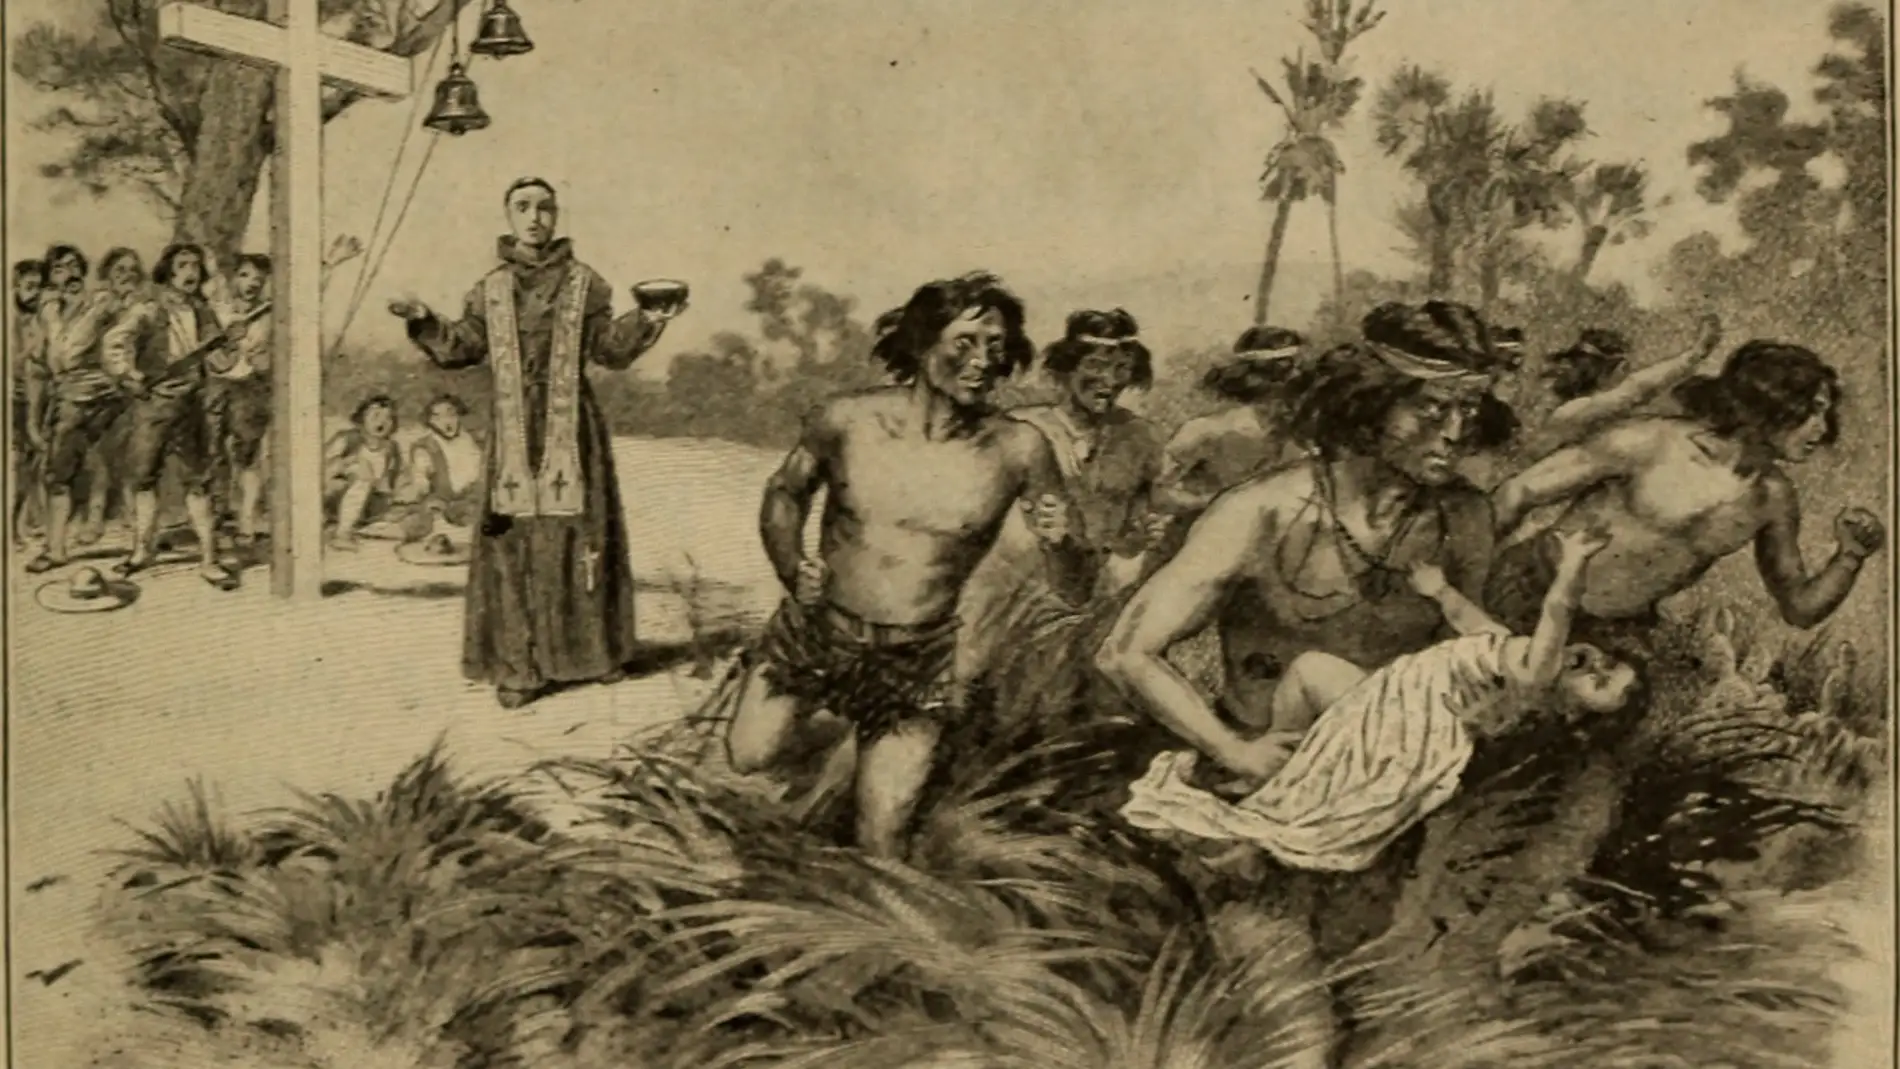 La mortalidad de los indigenas de California tras la colonizacion espanola fue similar a la de una epidemia